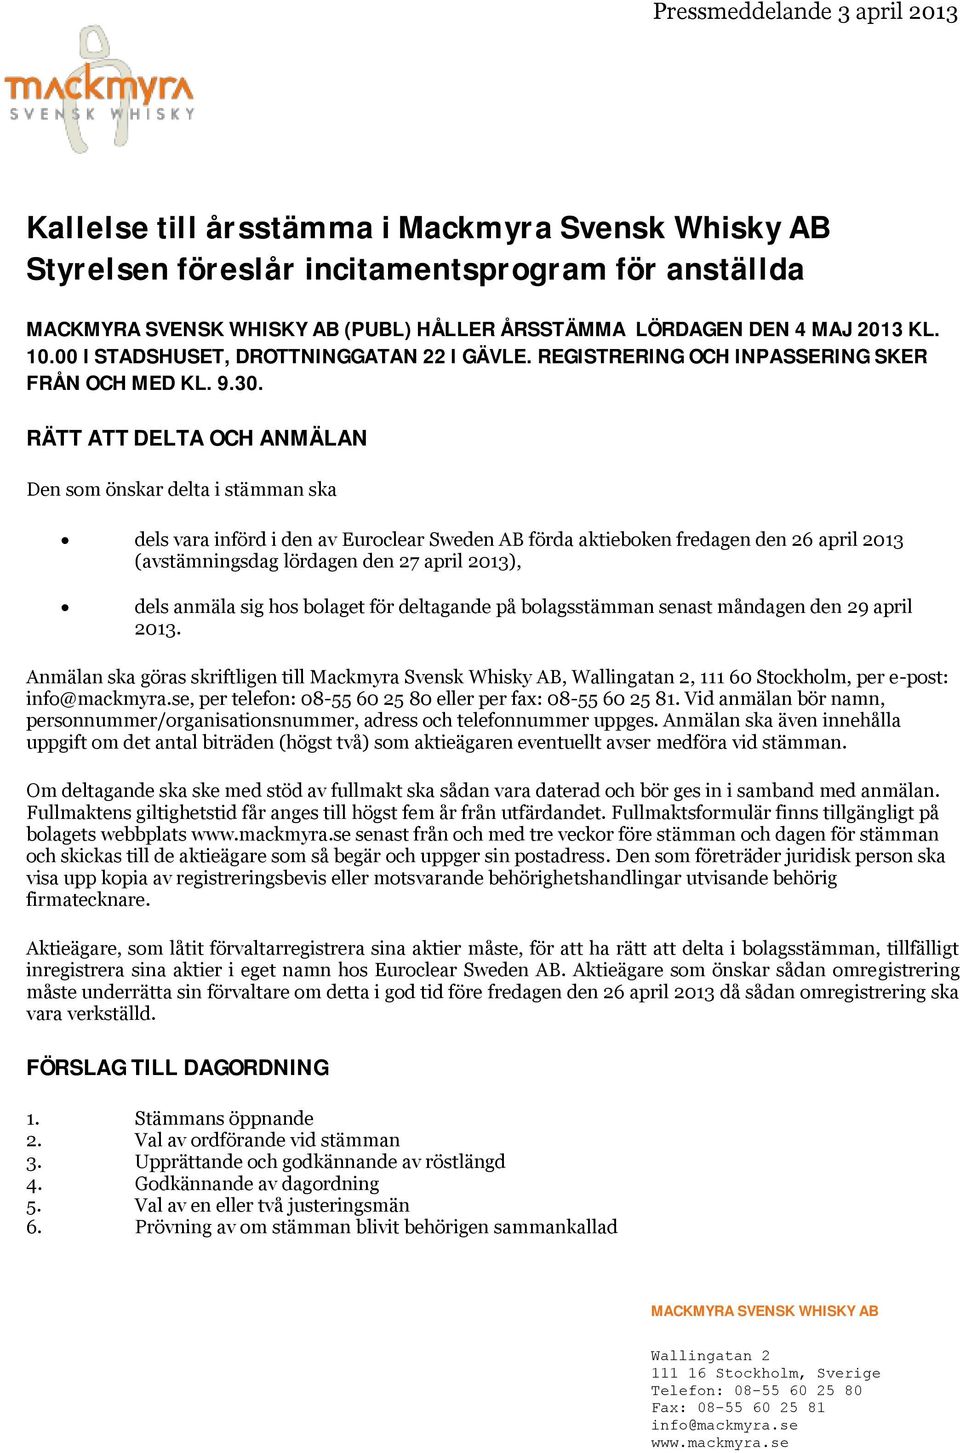 RÄTT ATT DELTA OCH ANMÄLAN Den som önskar delta i stämman ska dels vara införd i den av Euroclear Sweden AB förda aktieboken fredagen den 26 april 2013 (avstämningsdag lördagen den 27 april 2013),